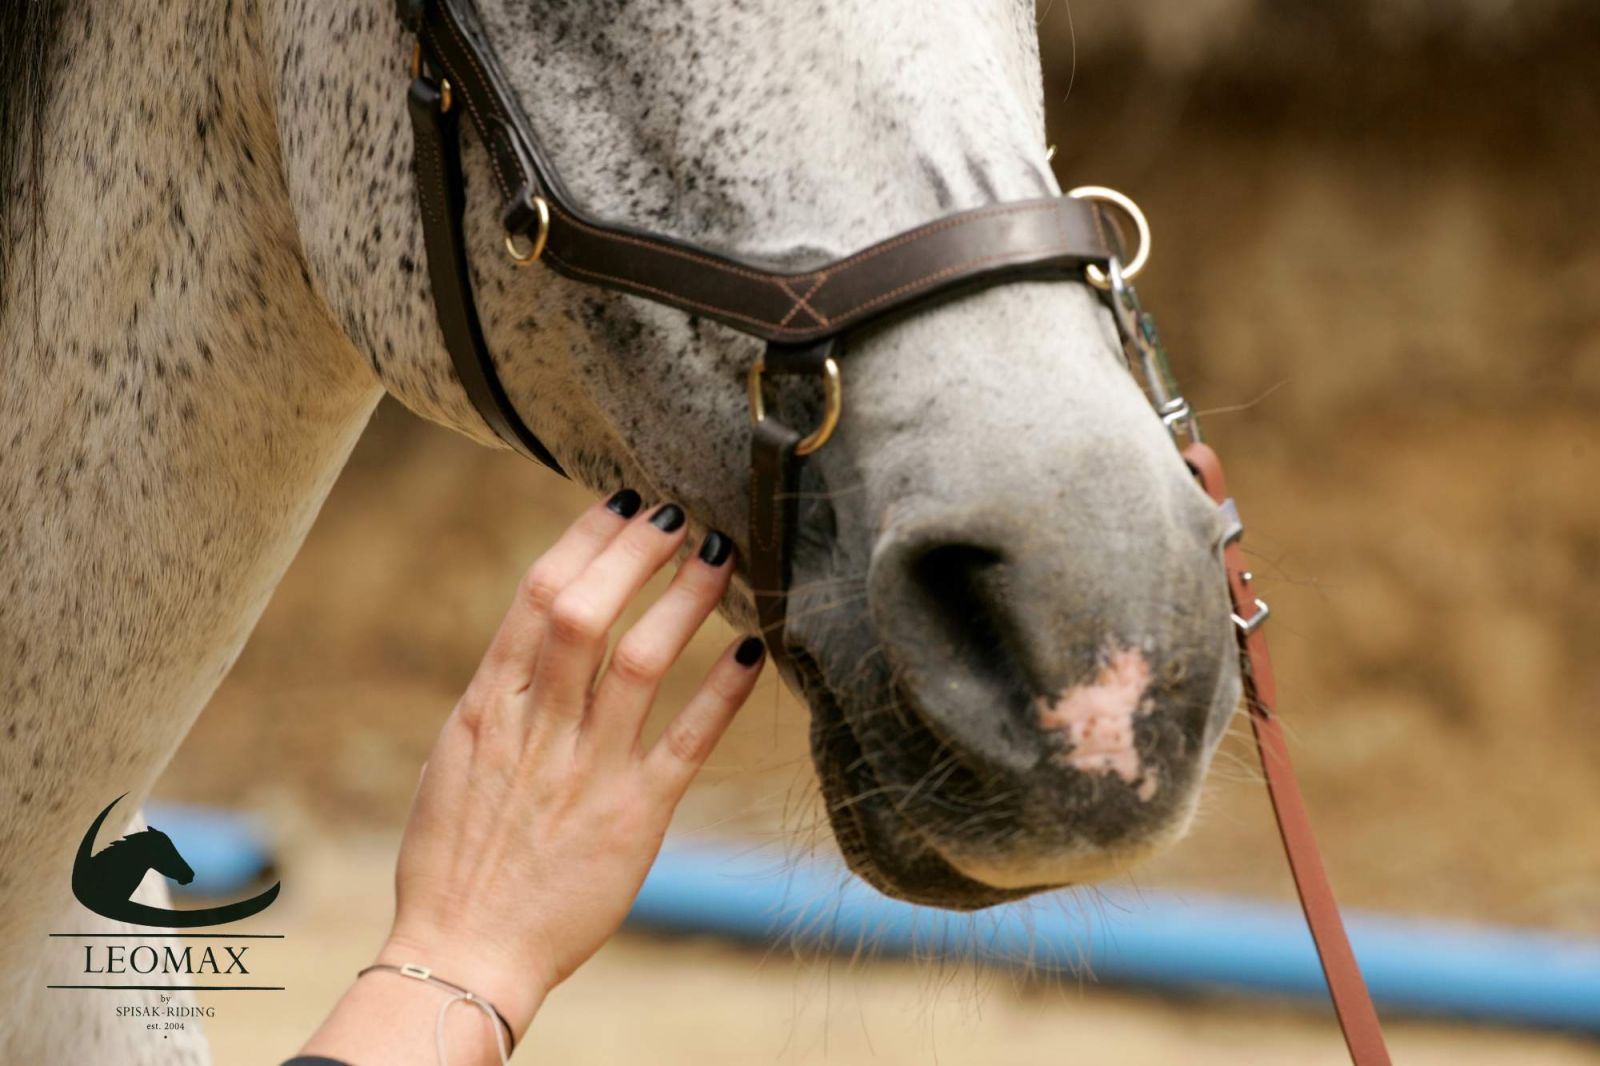 Vedia kone naozaj vycítiť strach?